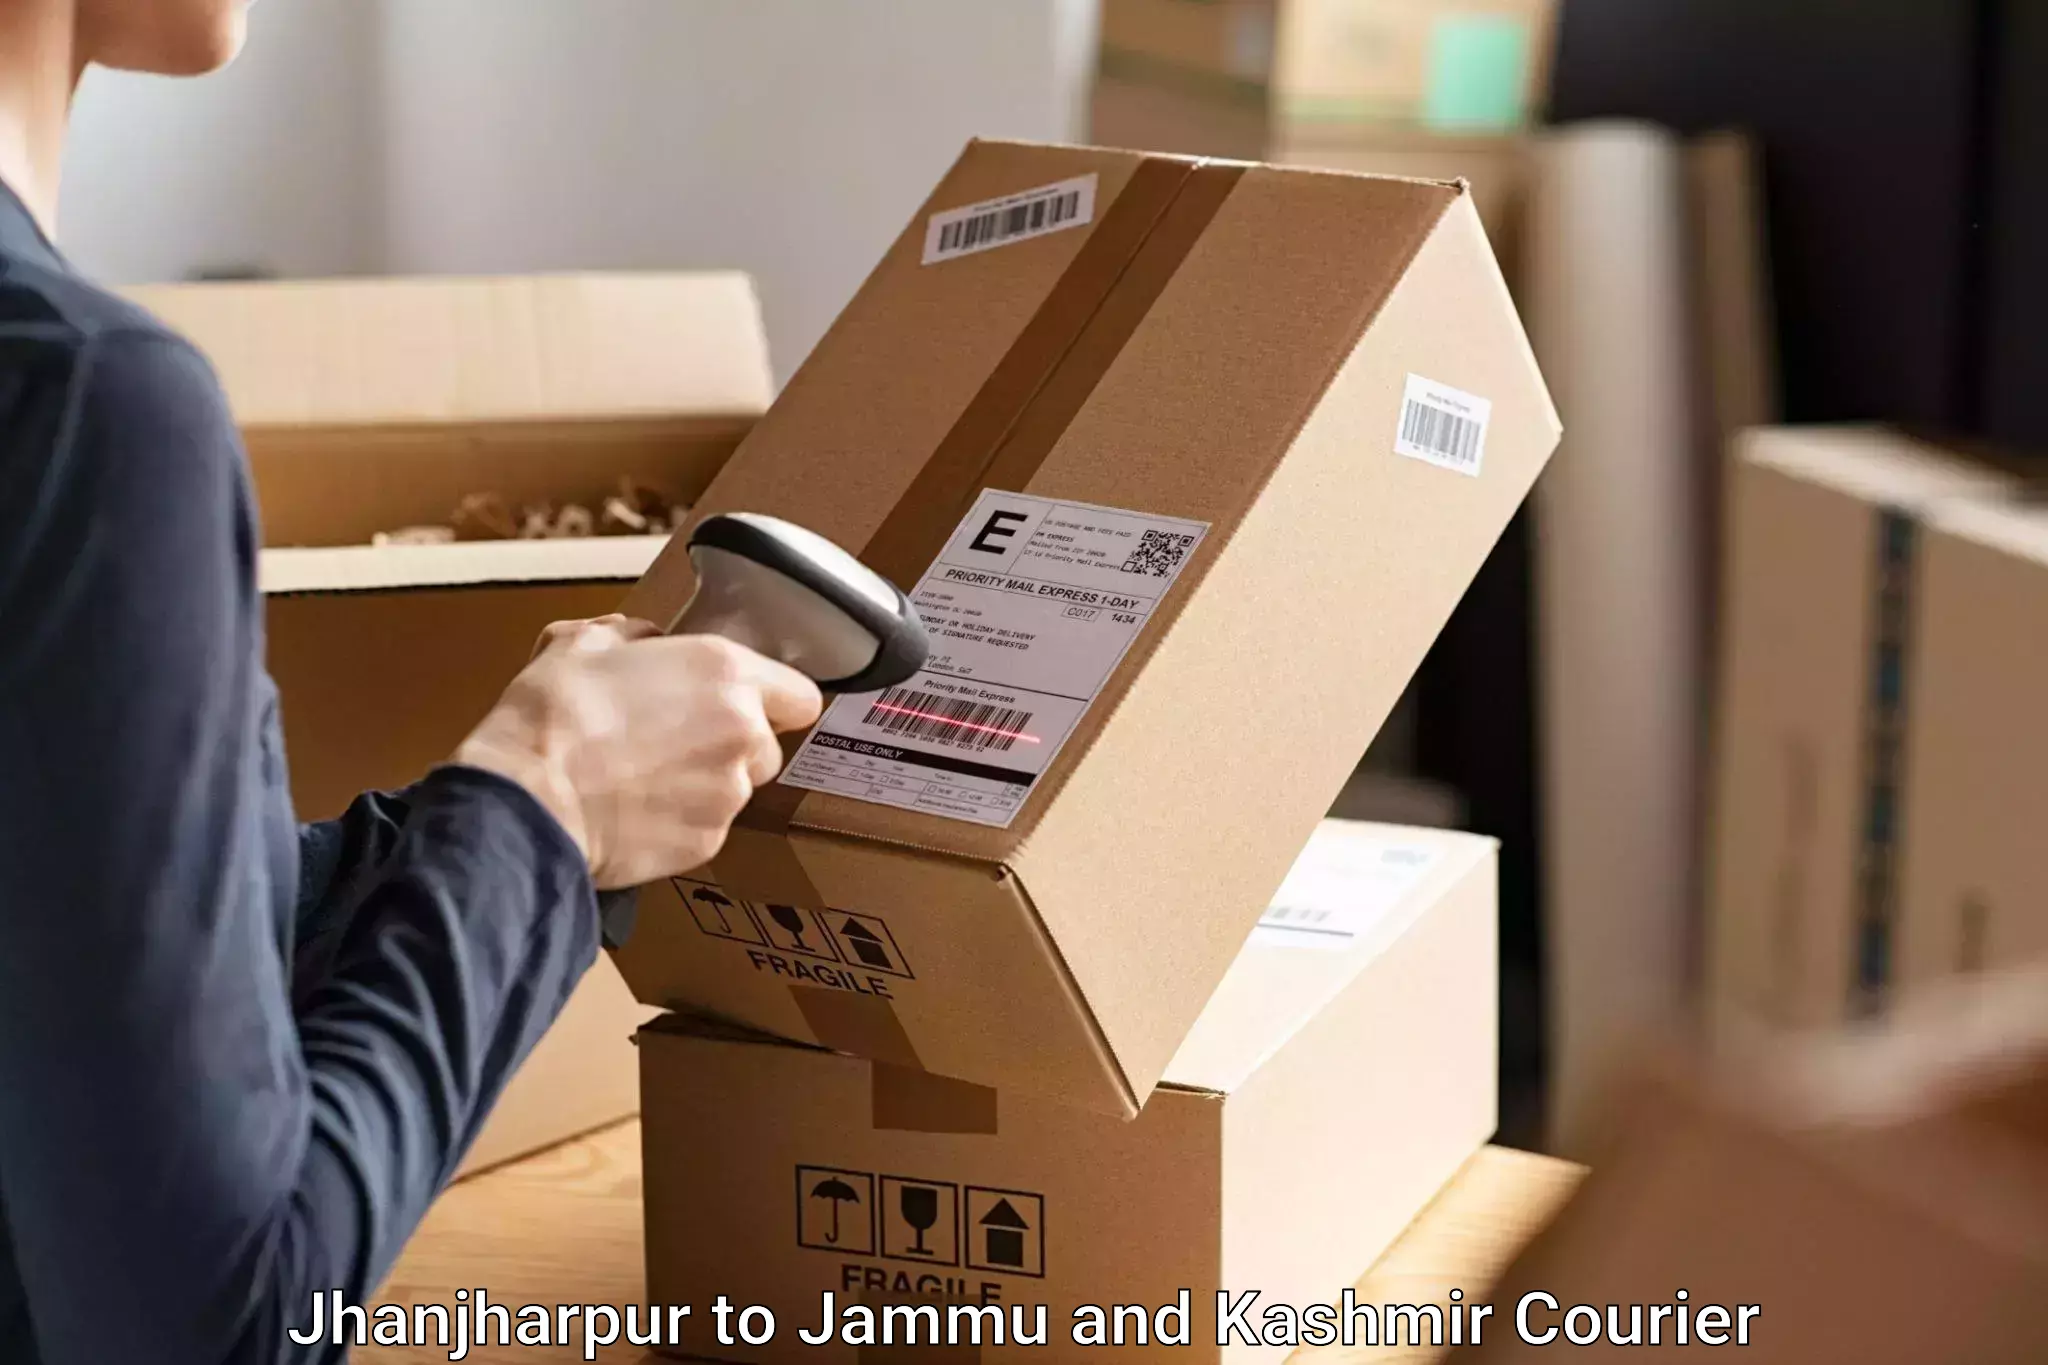 Baggage delivery estimate Jhanjharpur to Chenani